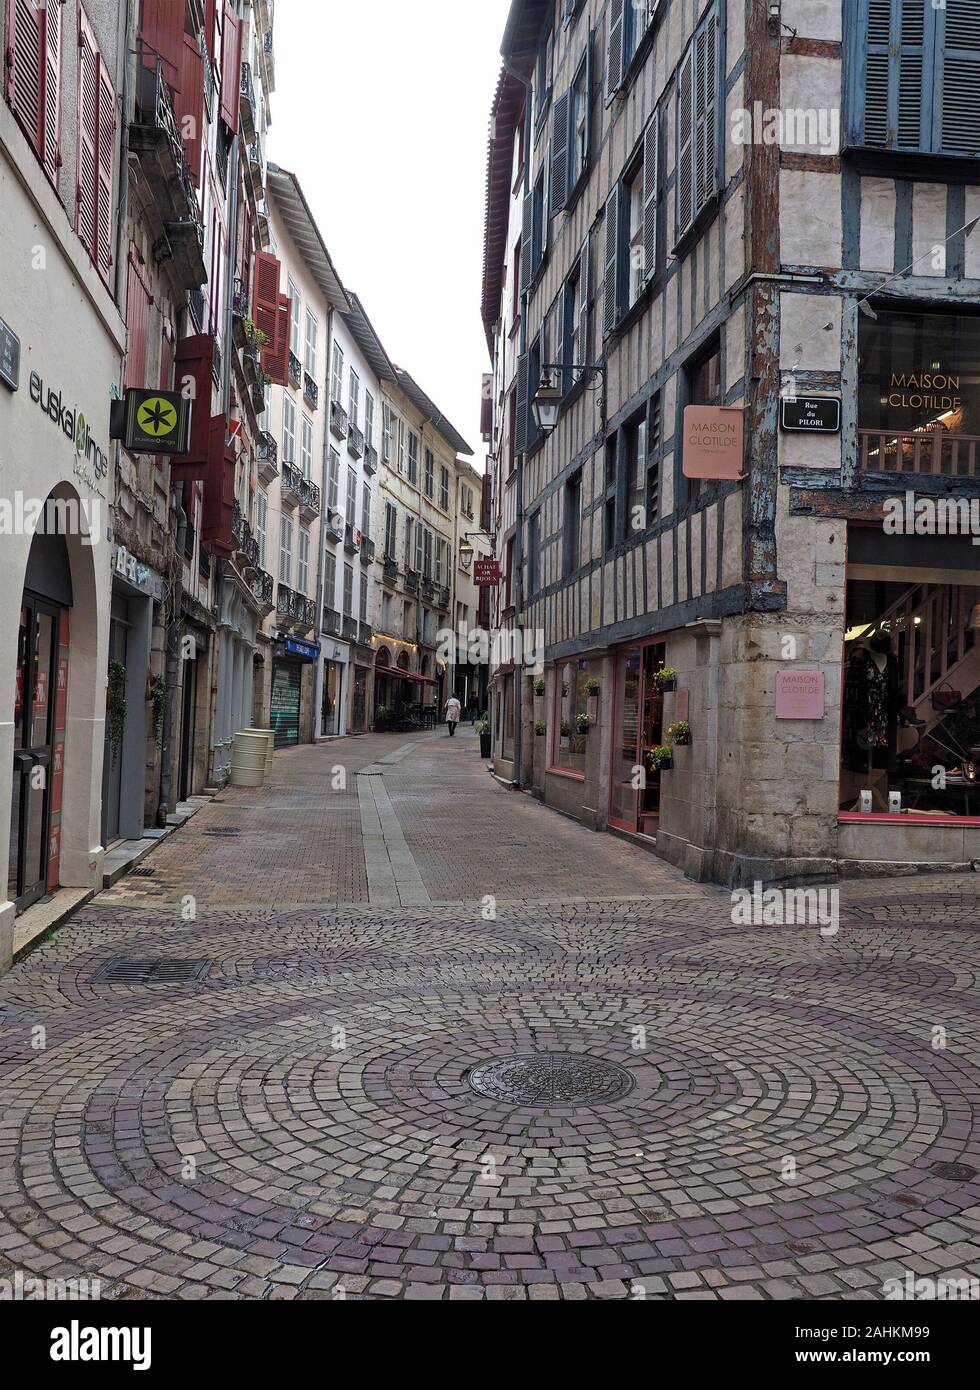 Kreisförmige gemusterte Steinpflasterung an einer Kreuzung mit der Rue du Pilori im alten Einkaufsviertel der alten baskischen Stadt Bayonne, Frankreich Stockfoto